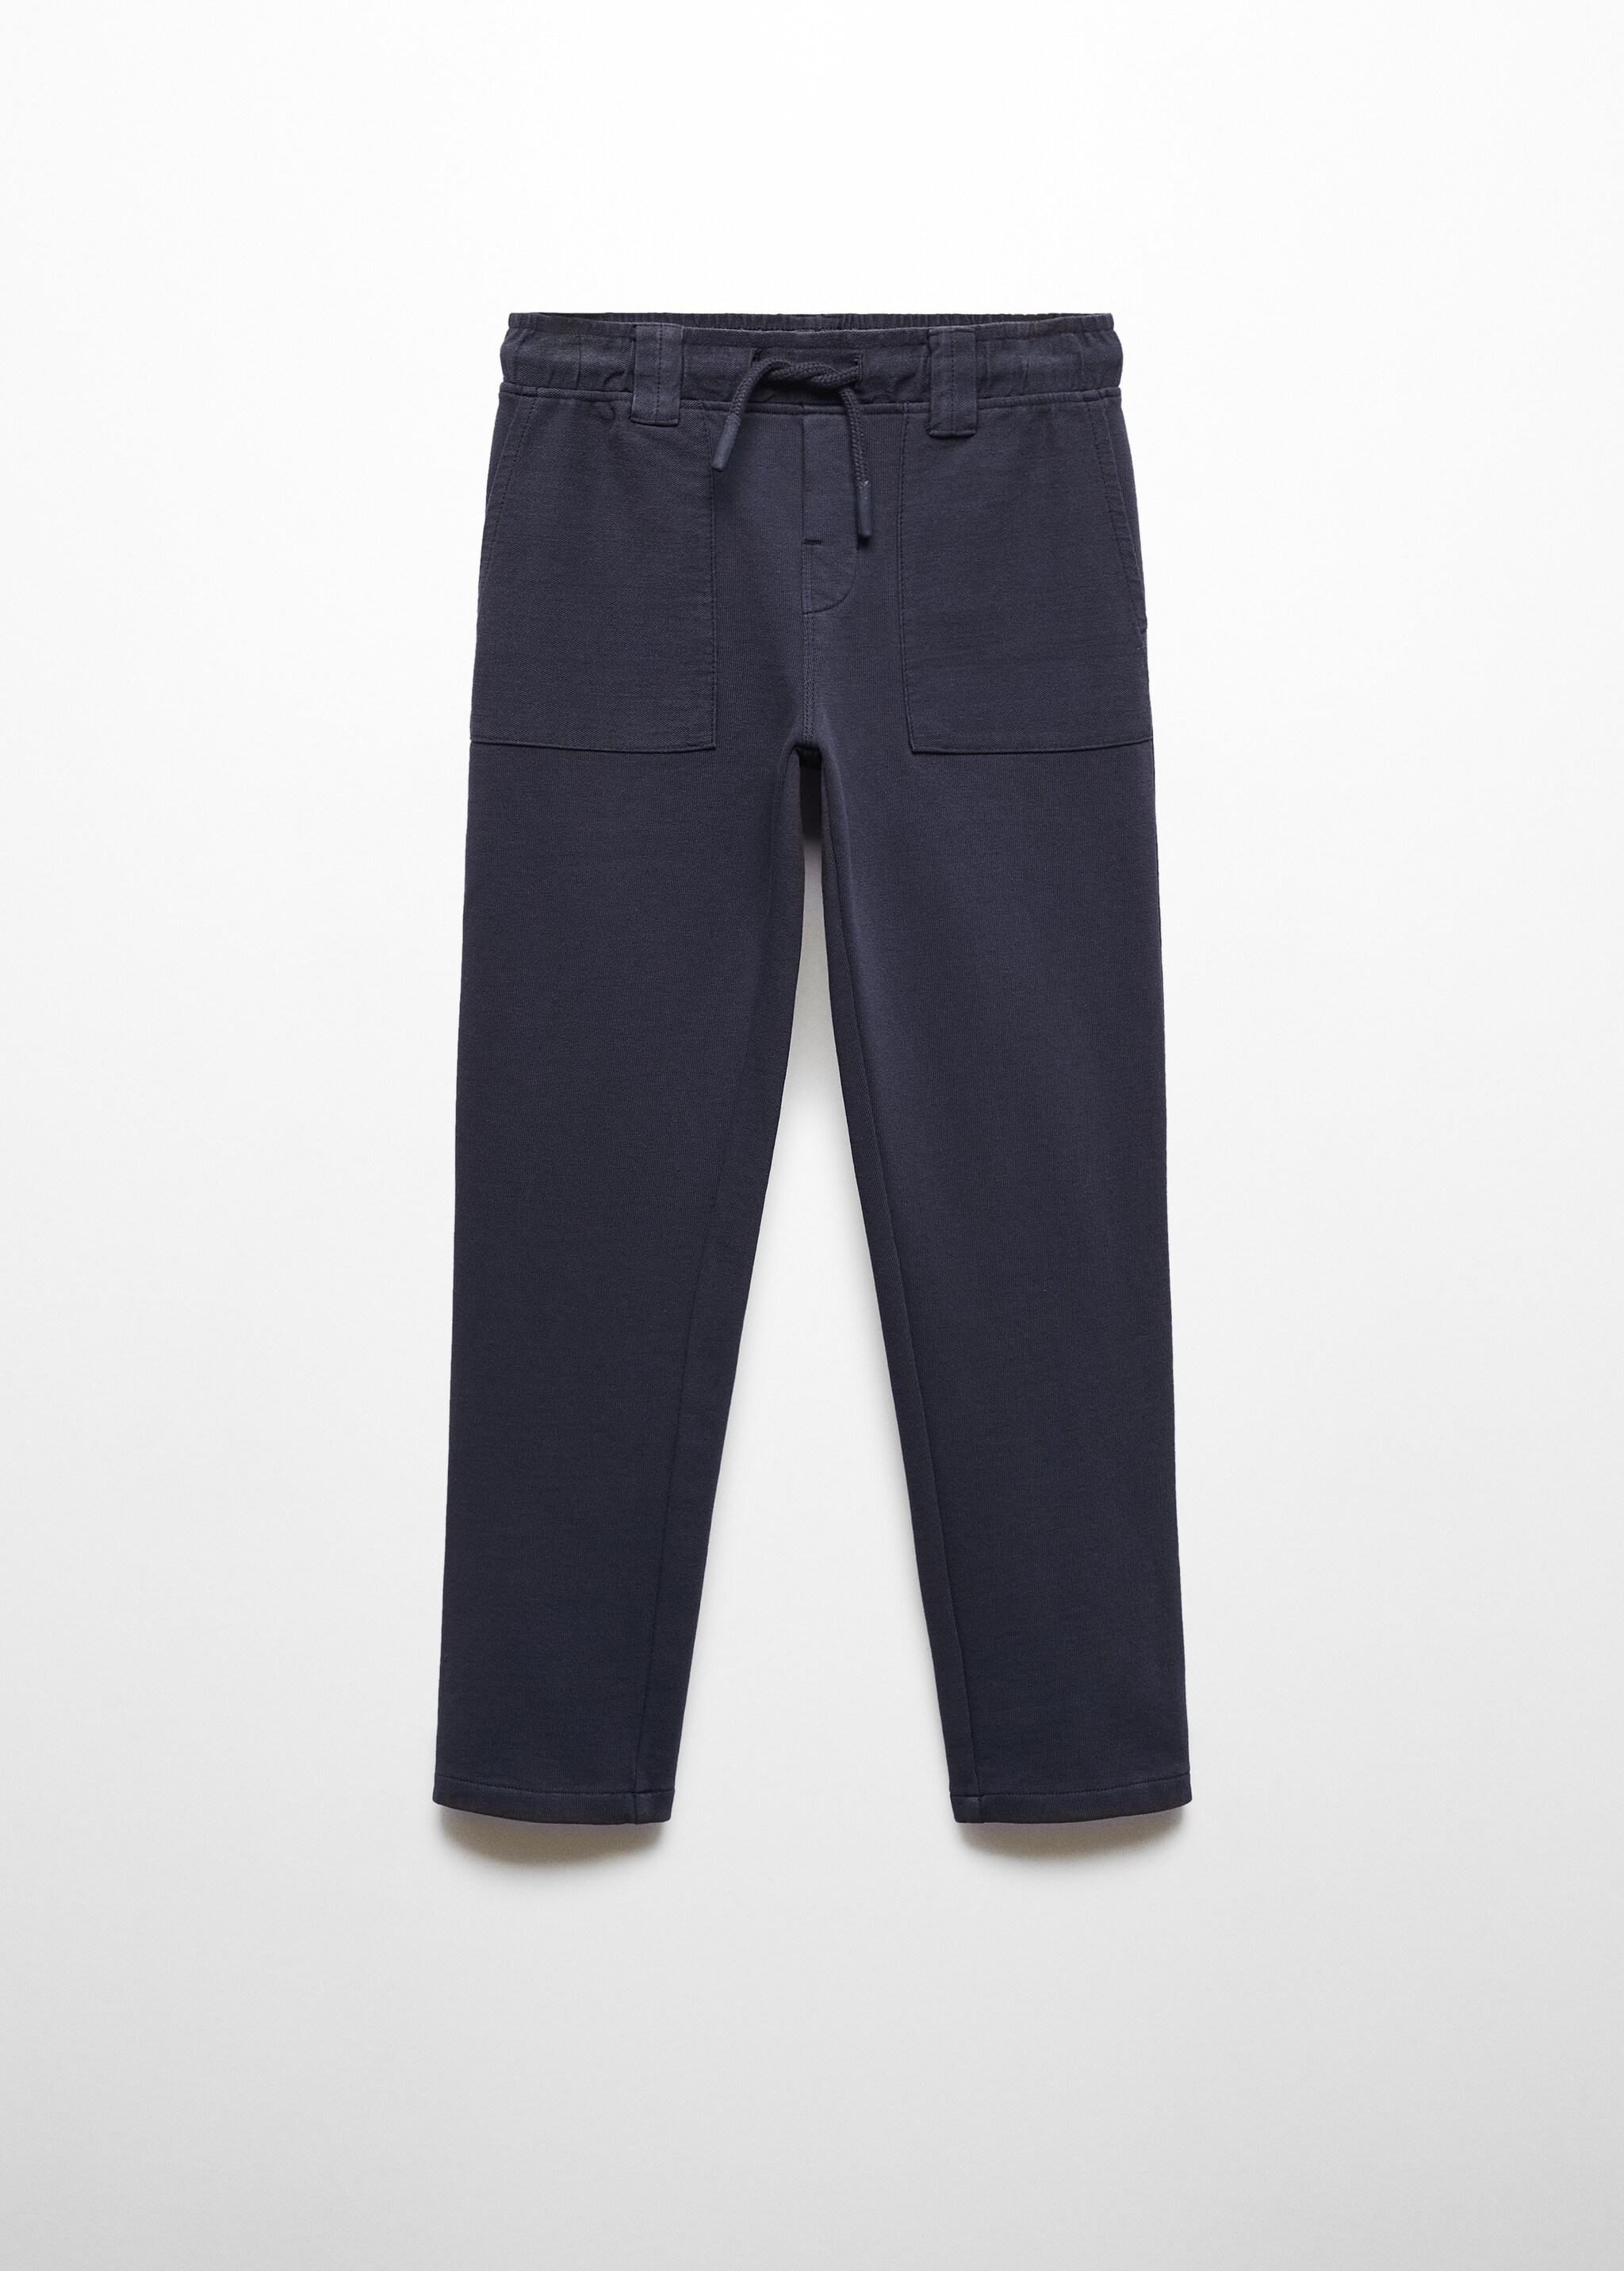 Pantalón cintura elástica - Artículo sin modelo